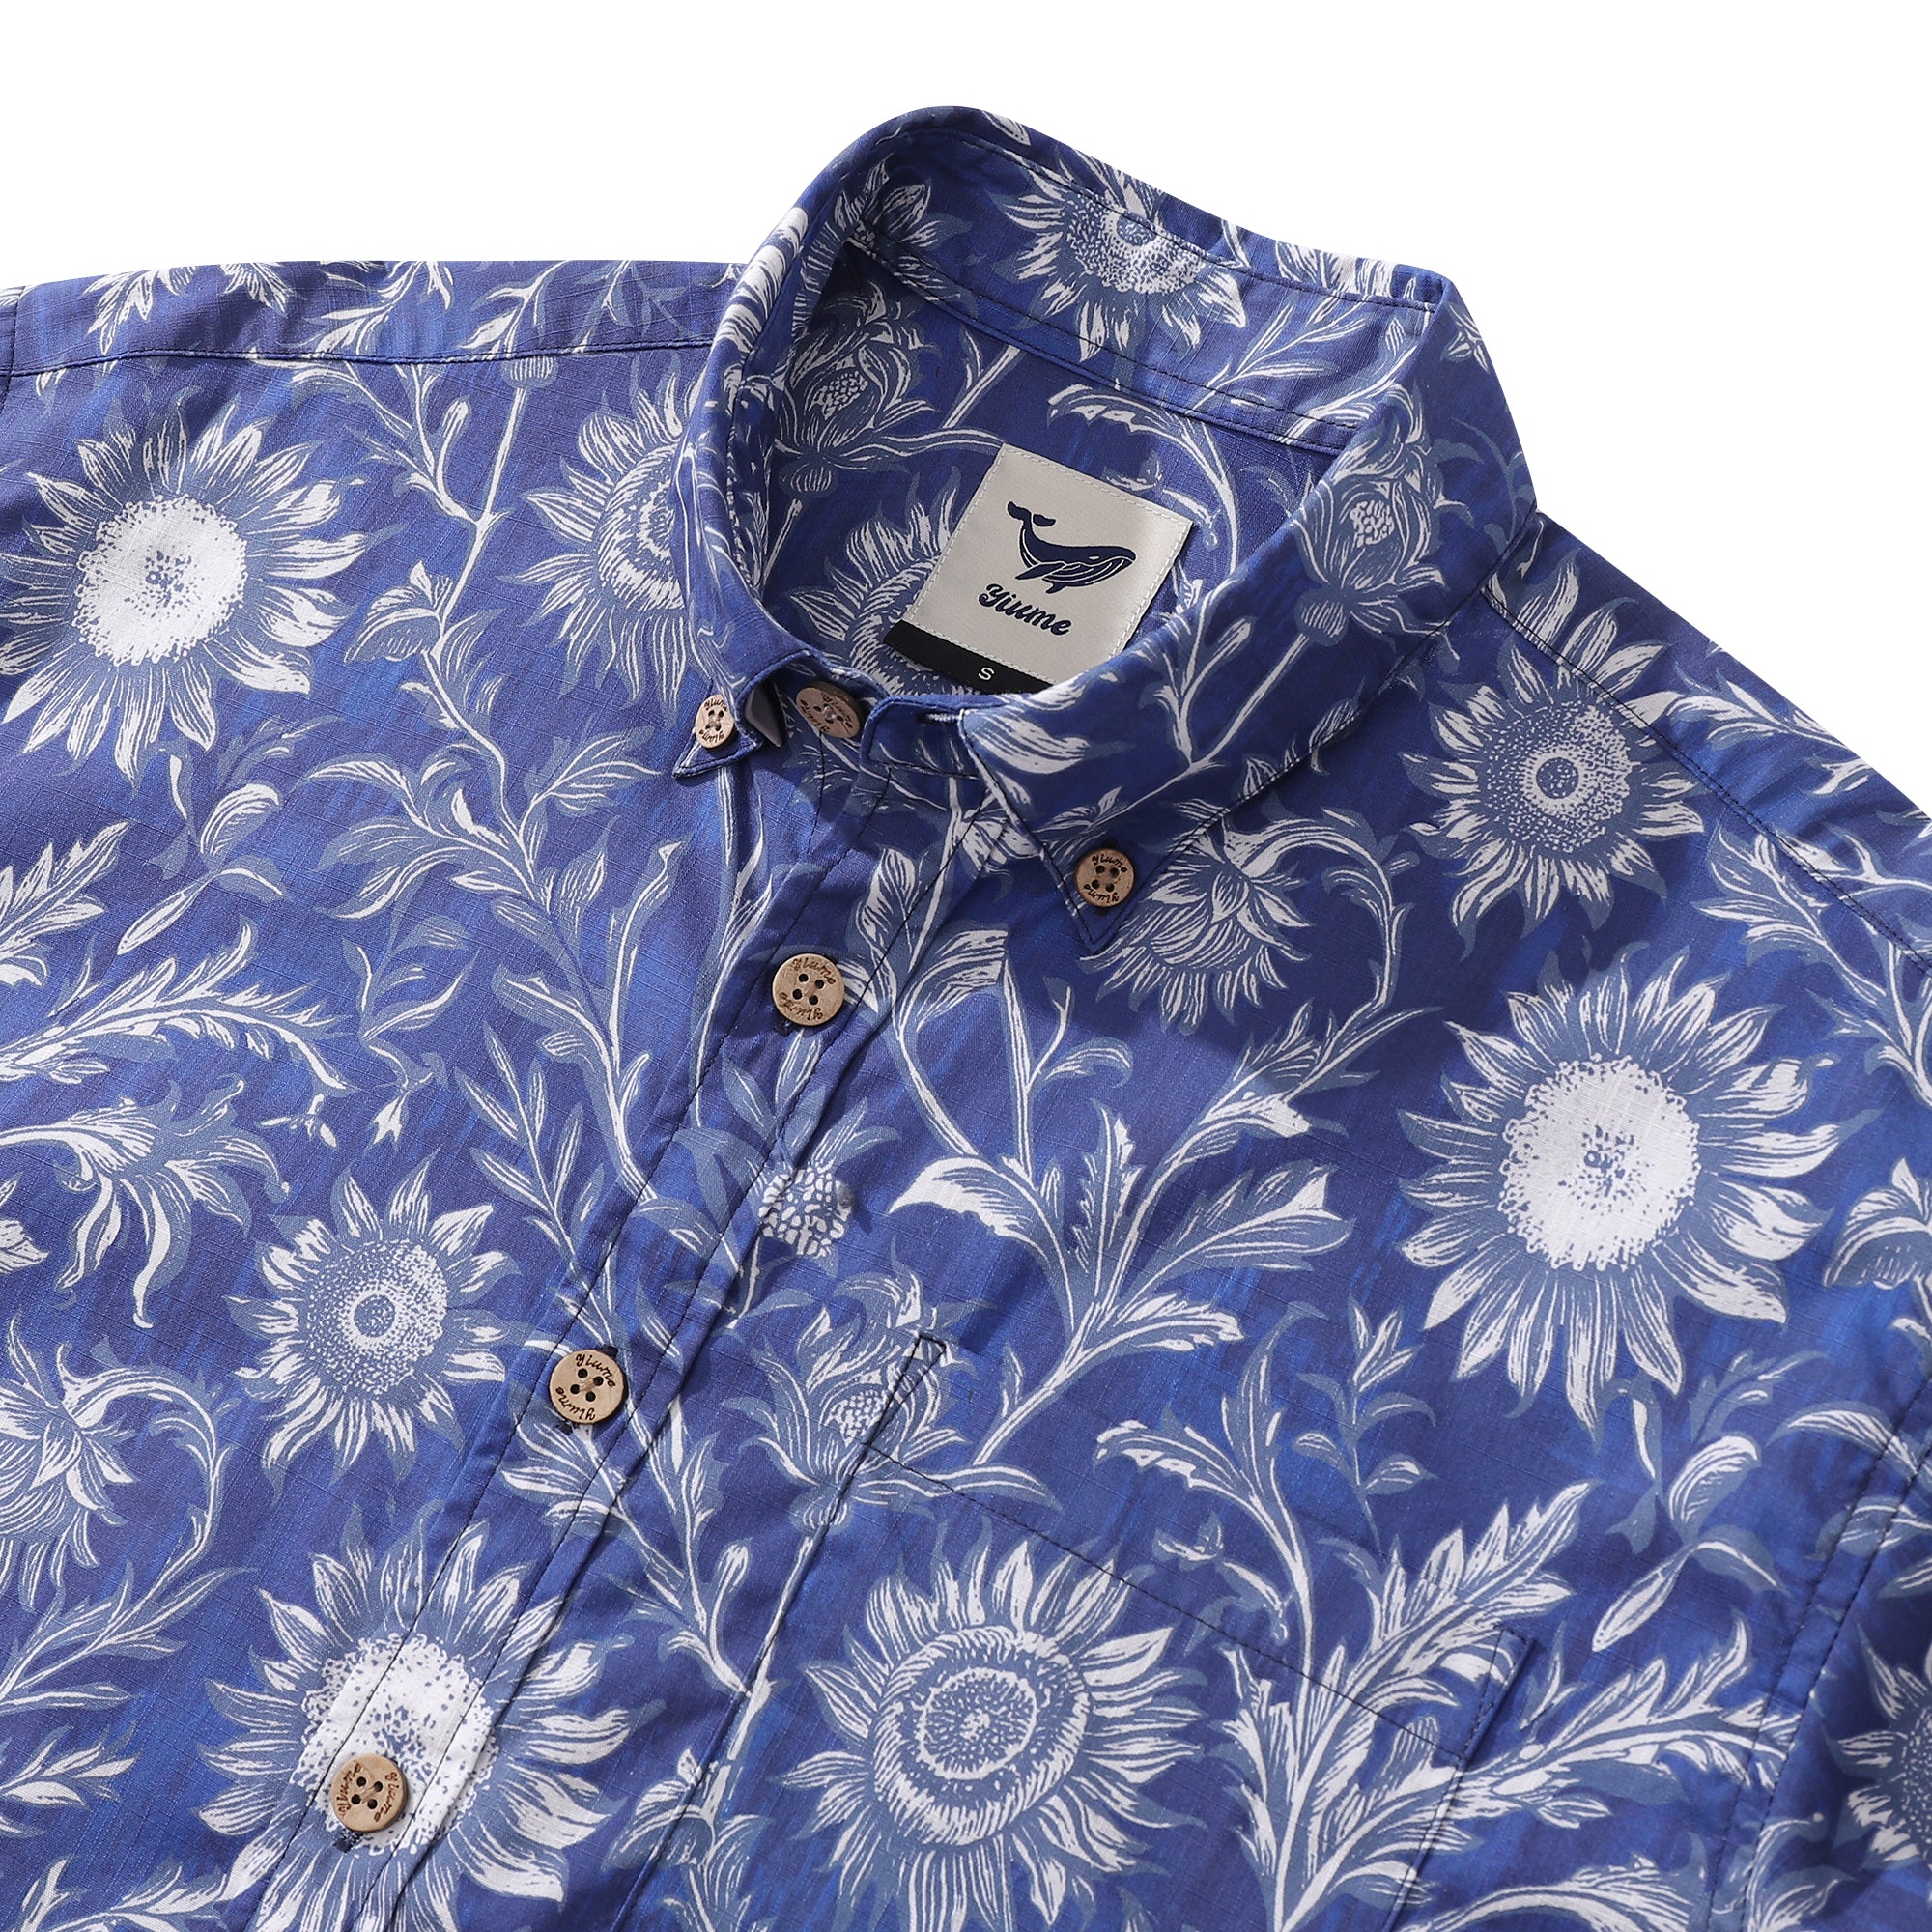 Hawaiian Shirt For Men Blue and White Porcelain Sunflower Button-down Short Sleeve 100% Cotton Shirt